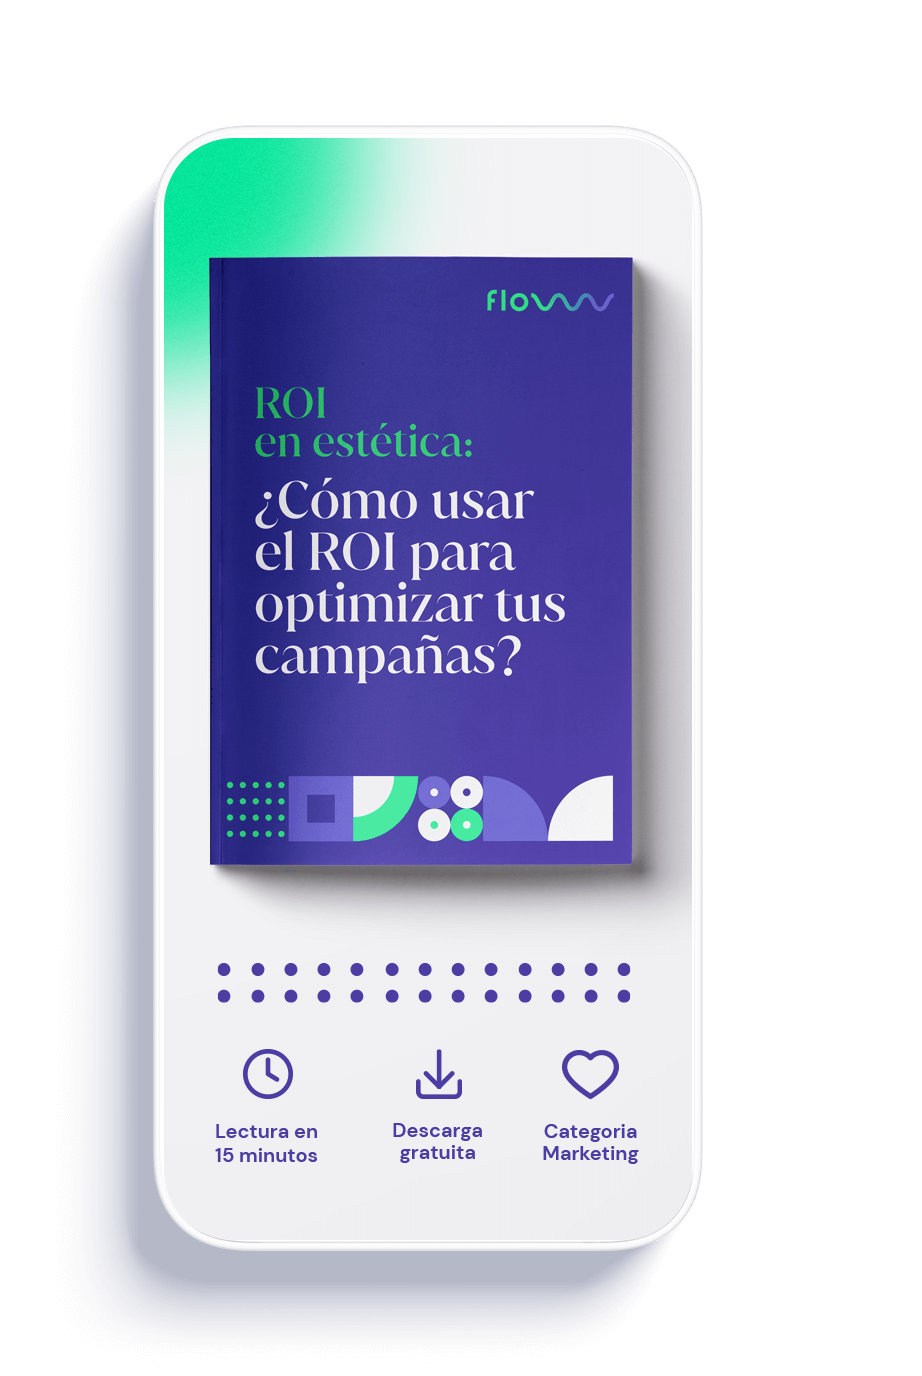 ROI en estética: ¿Cómo usar el ROI para optimizar tus campañas?